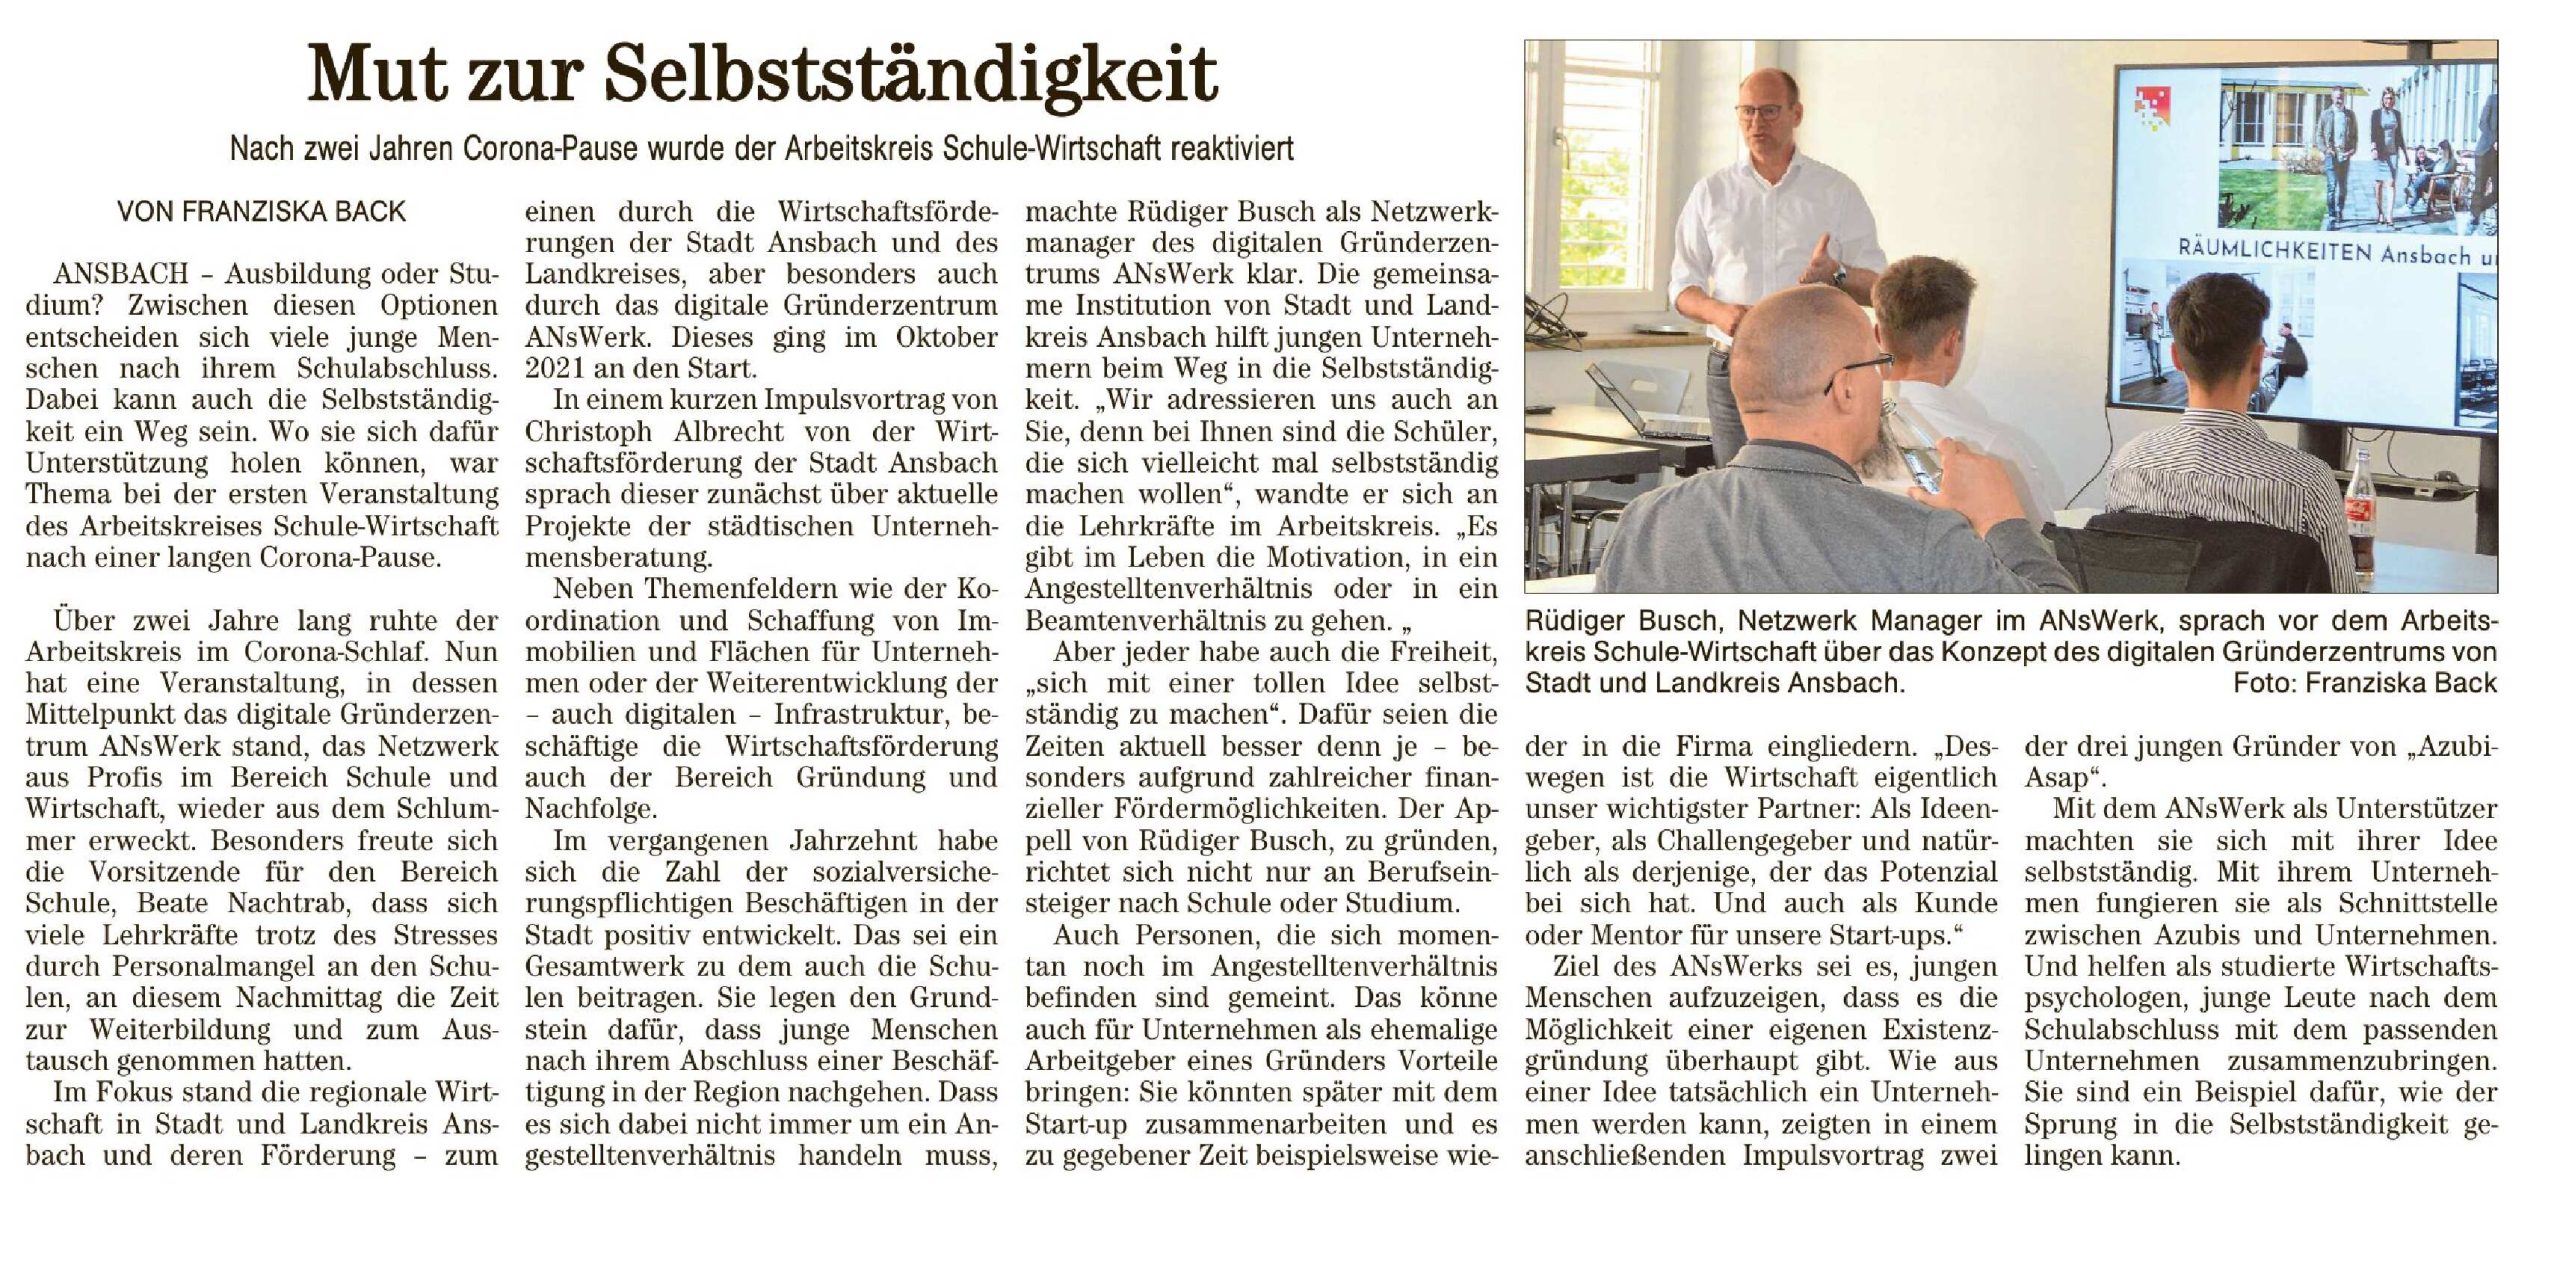 2022-06-09_Fraenkische_Landeszeitung_Ansbacher_Tageblatt_-_2022-06-09-26